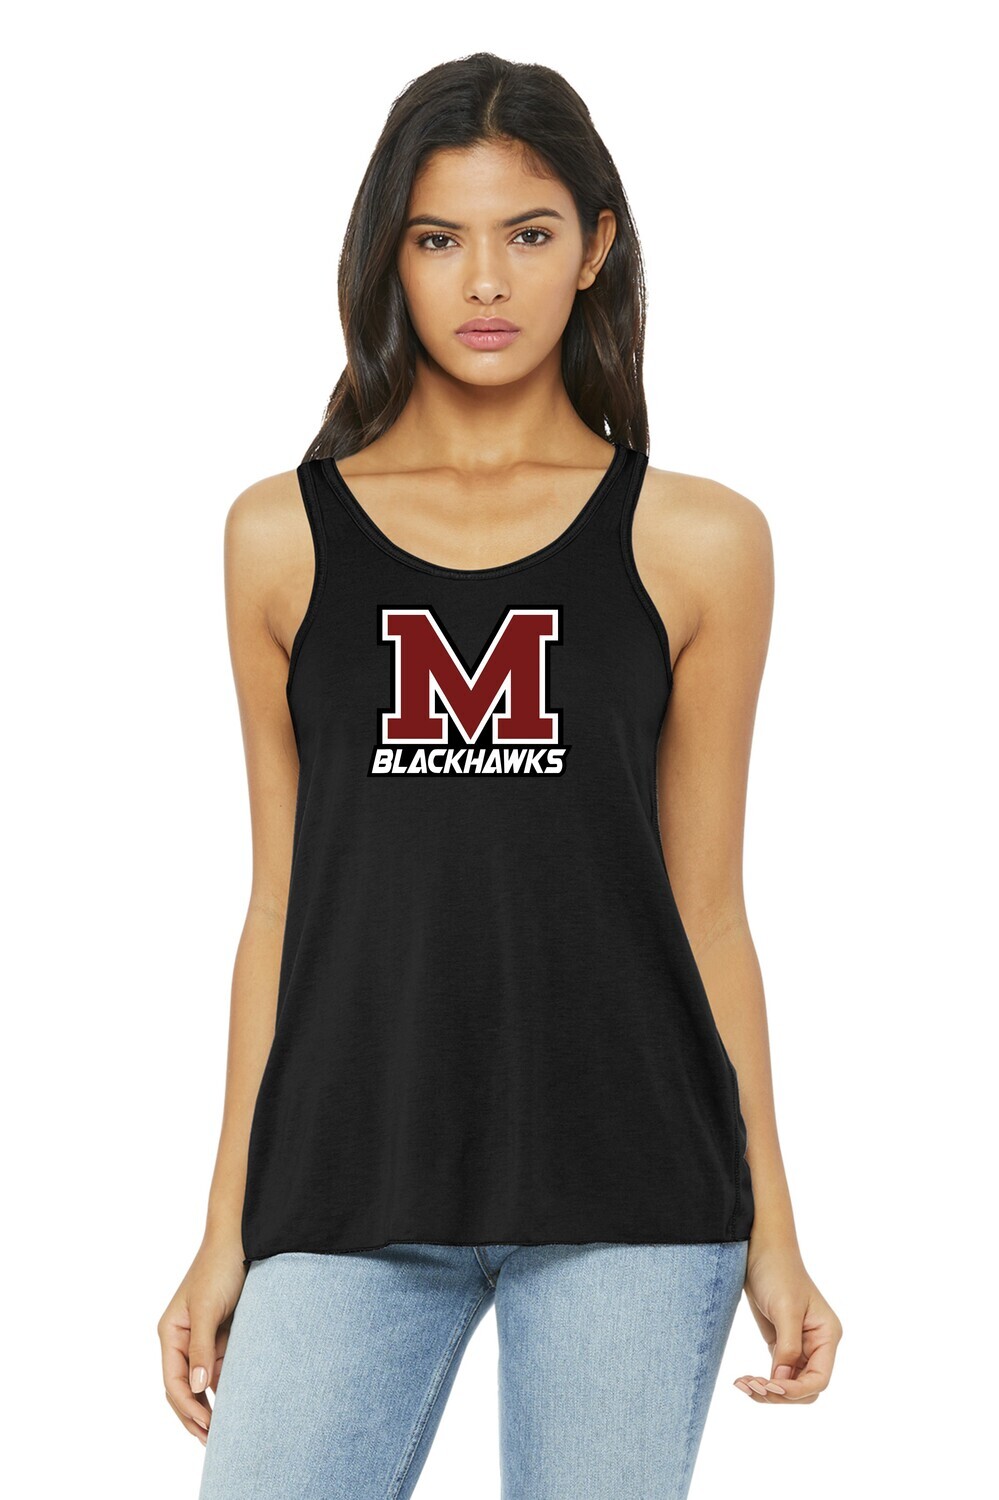 Moline Blackhawks "M" Logo Women's Flowy Racerback Tank